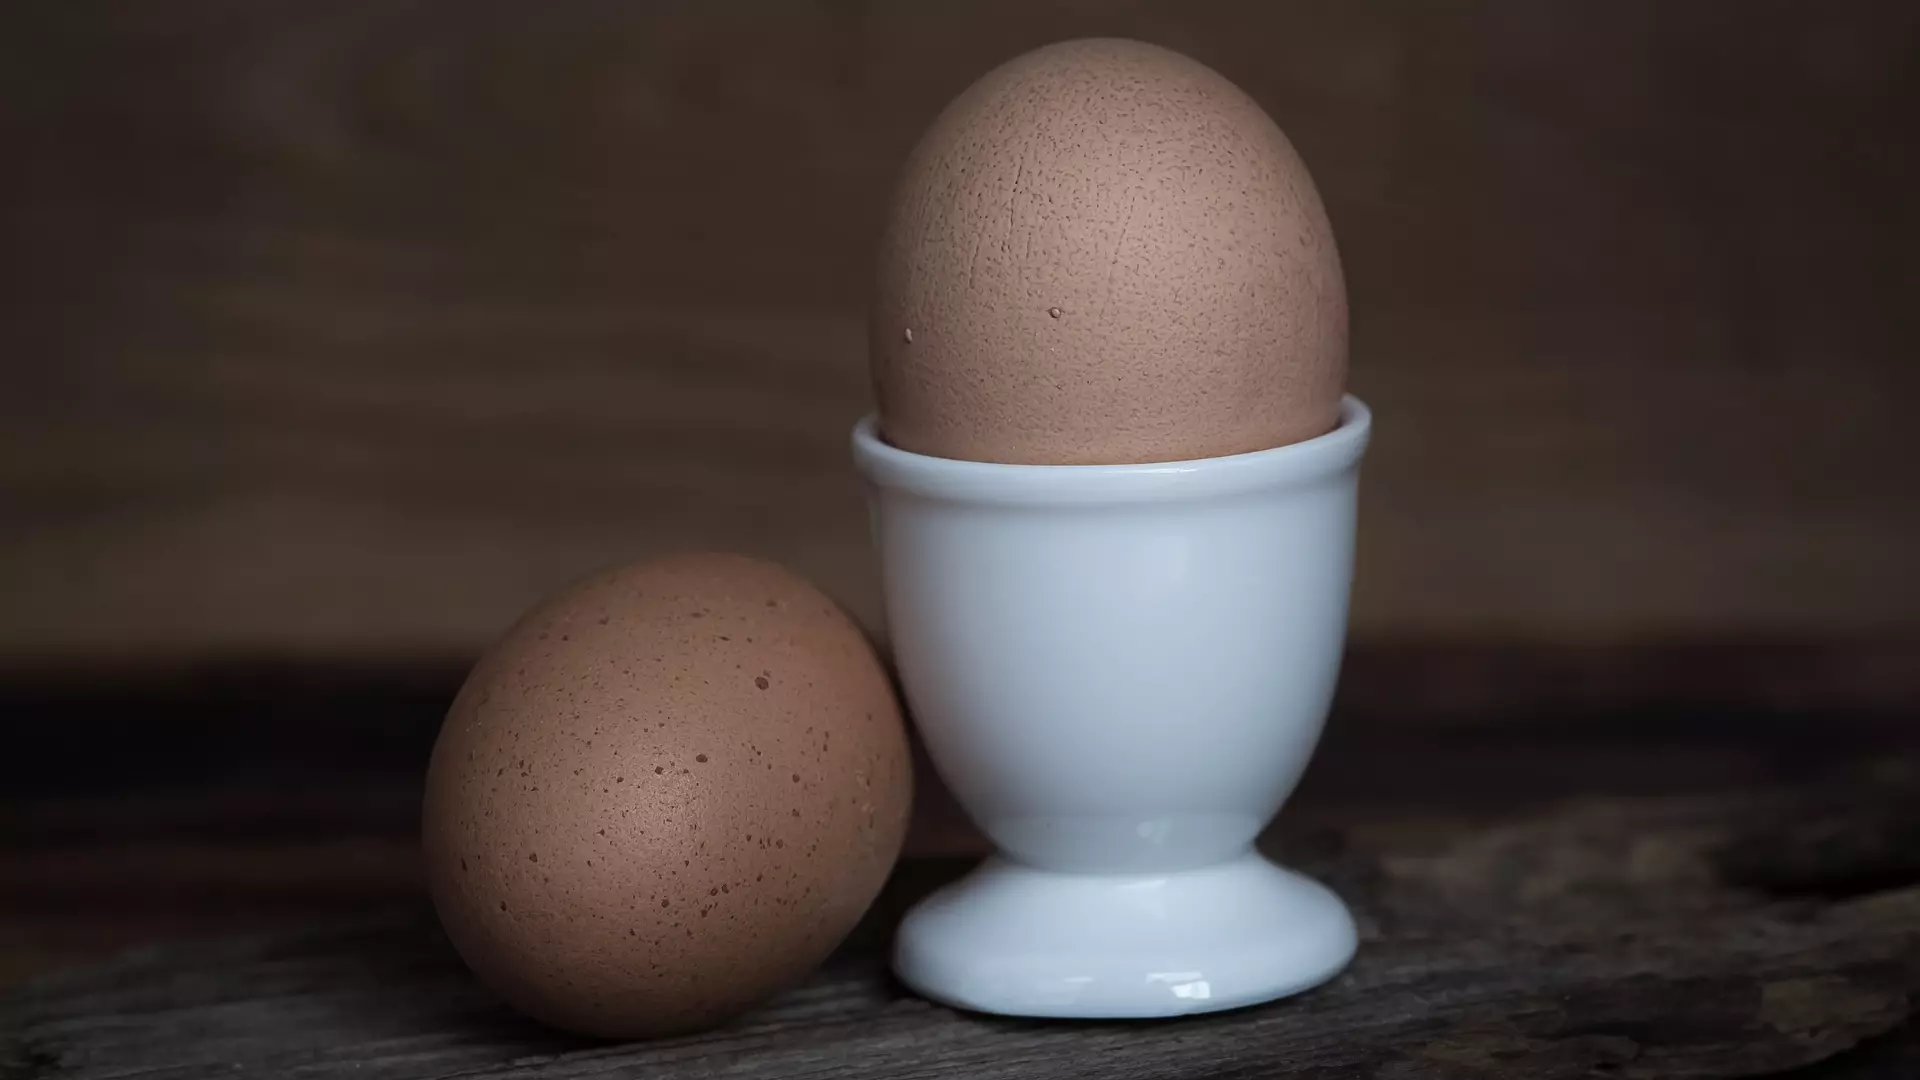 Антимонопольная служба начала проверки в крупнейших магазинах из-за цен на яйца